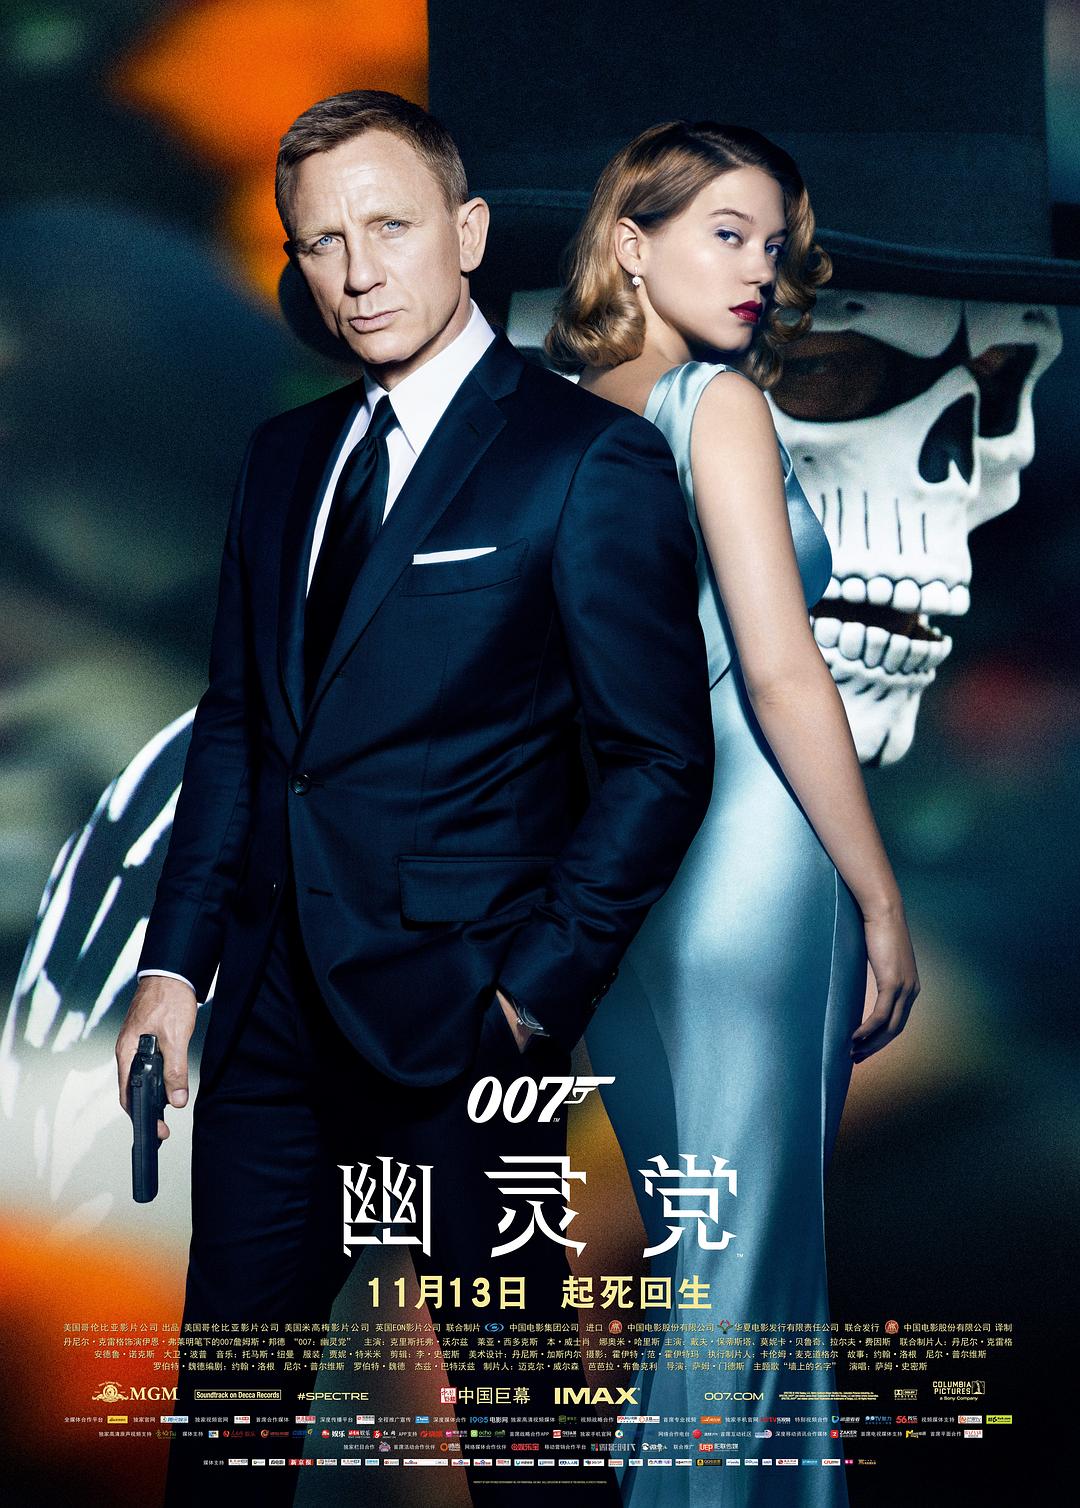 007:鬼魂党/007系列24:大破鬼魂危机 Spectre.2015.2160p.BluRay.x265.10bit.SDR.DTS-HD.MA.7.1-SWTYBLZ 56.90GB-1.png